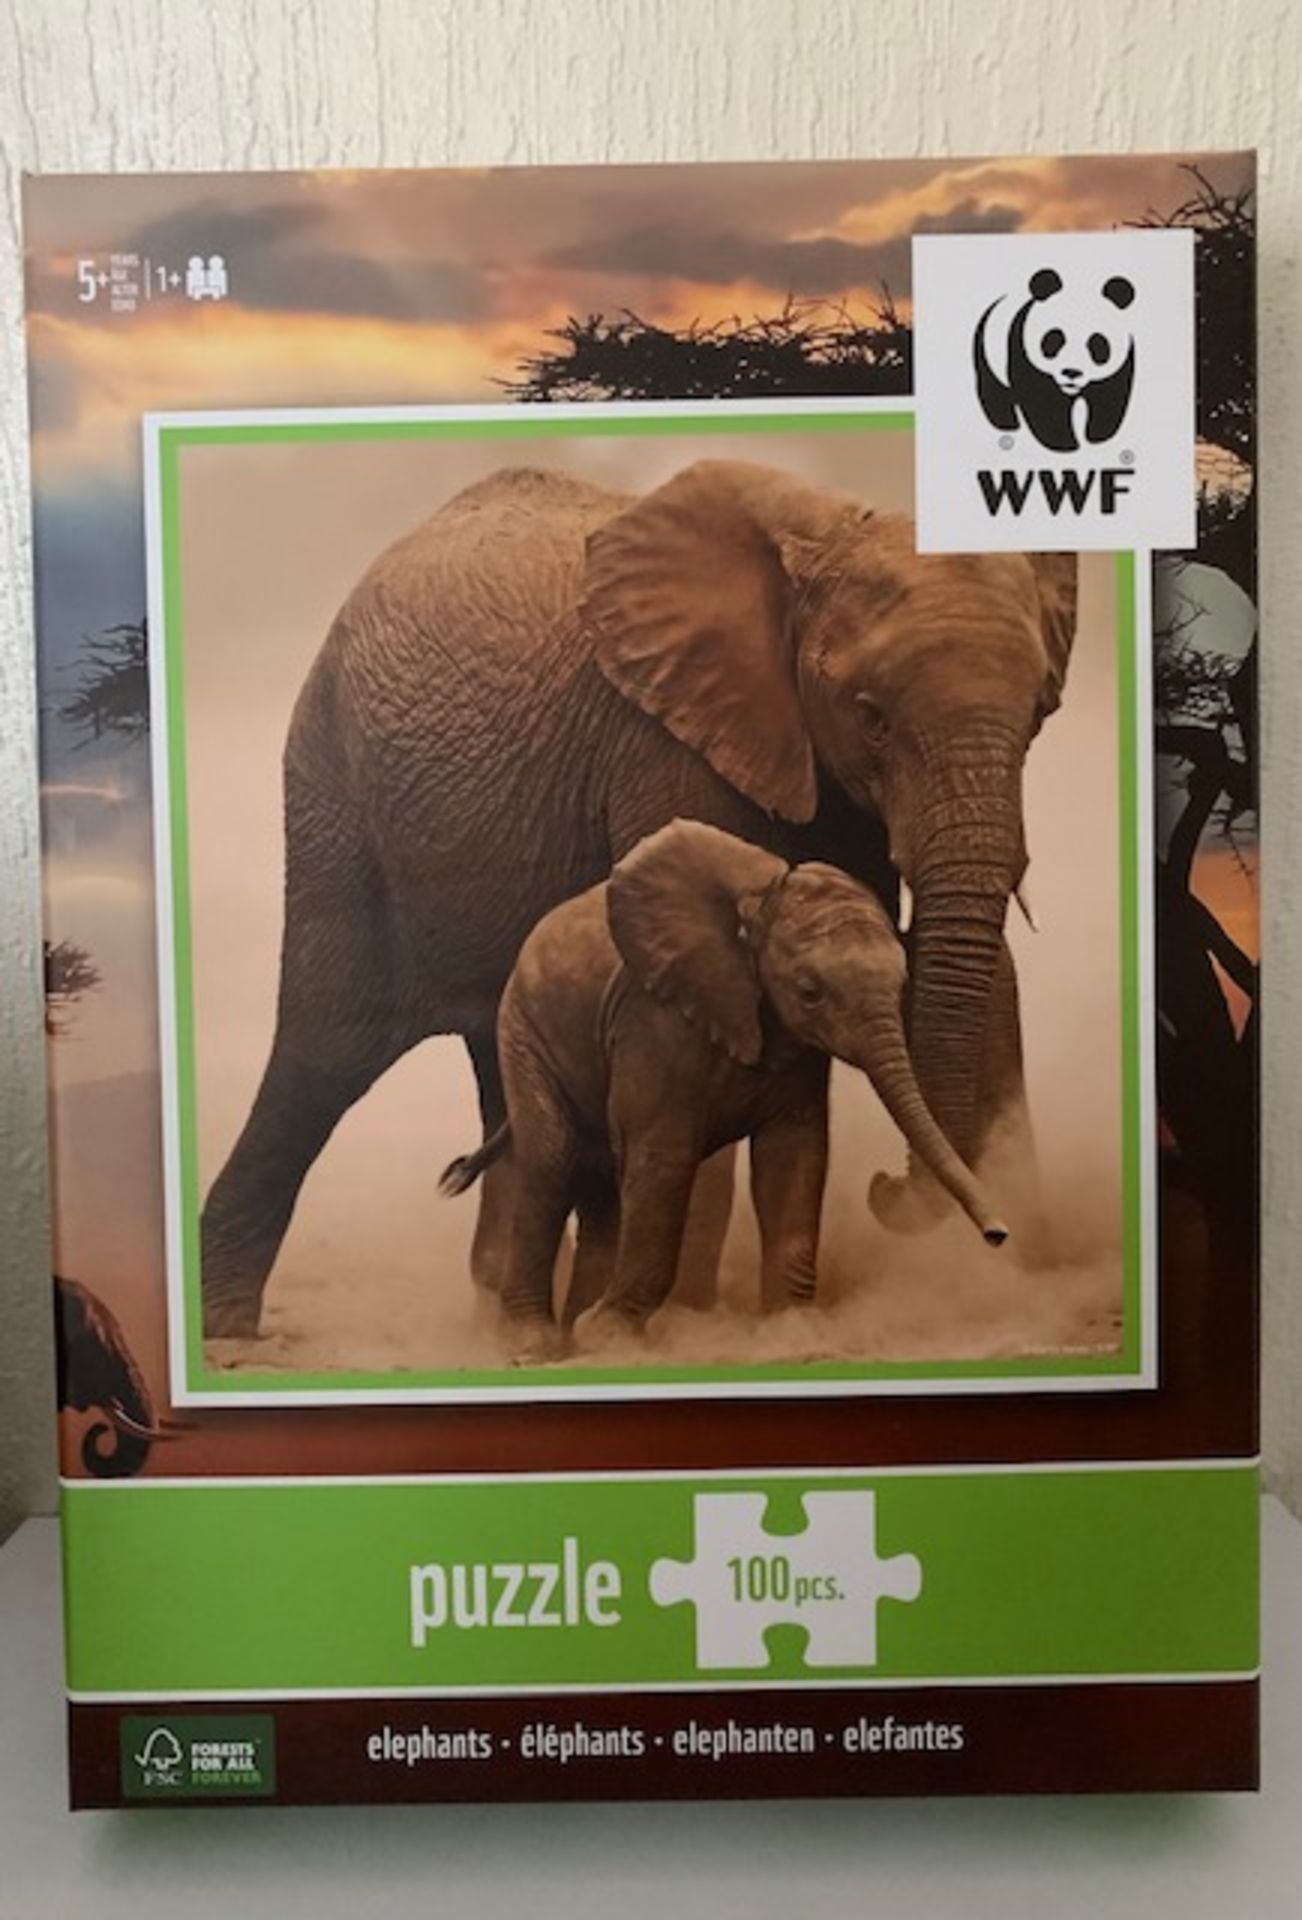 3 x WWF Elephant Jigsaws